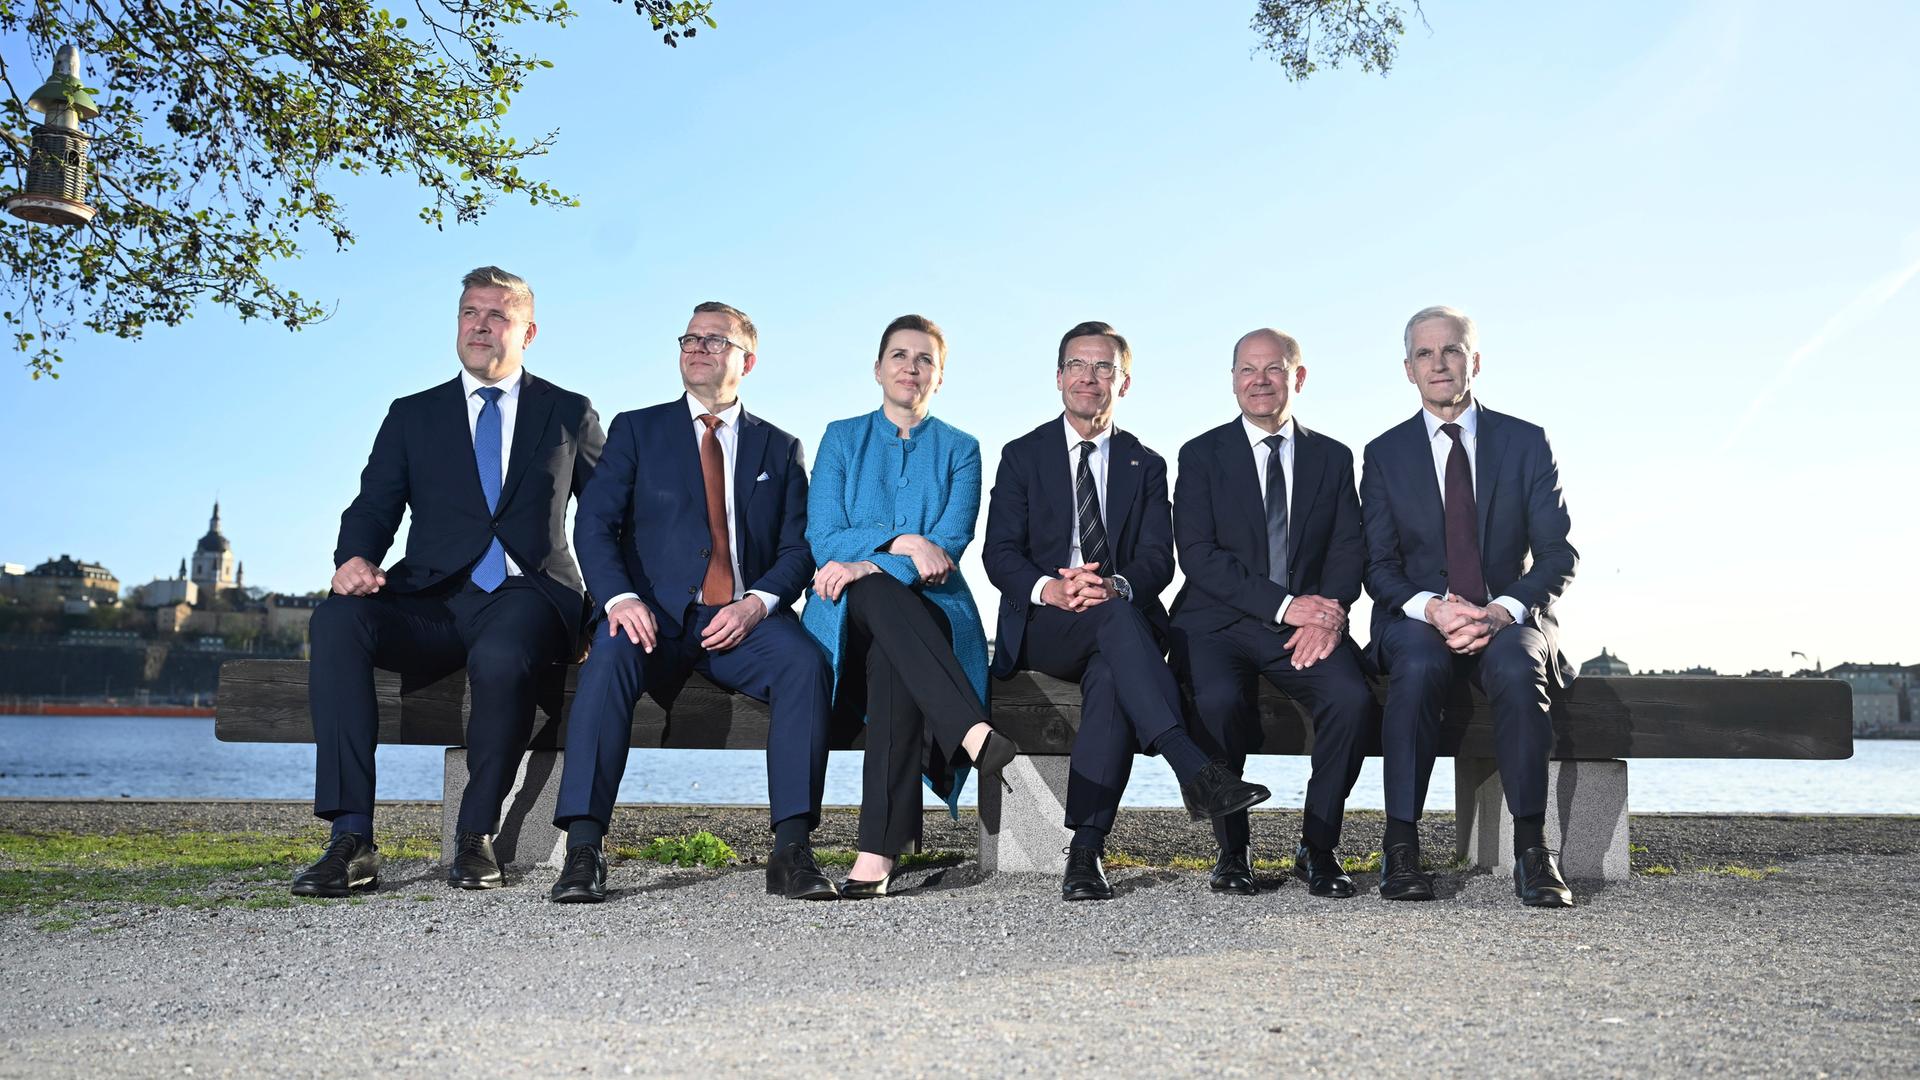 Bundeskanzler Scholz und die Regierungschefs der nordischen Länder sitzen nebeneinander auf einer Bank. Im Hintergrund sind Wasser und blauer Himmel zu sehen. 